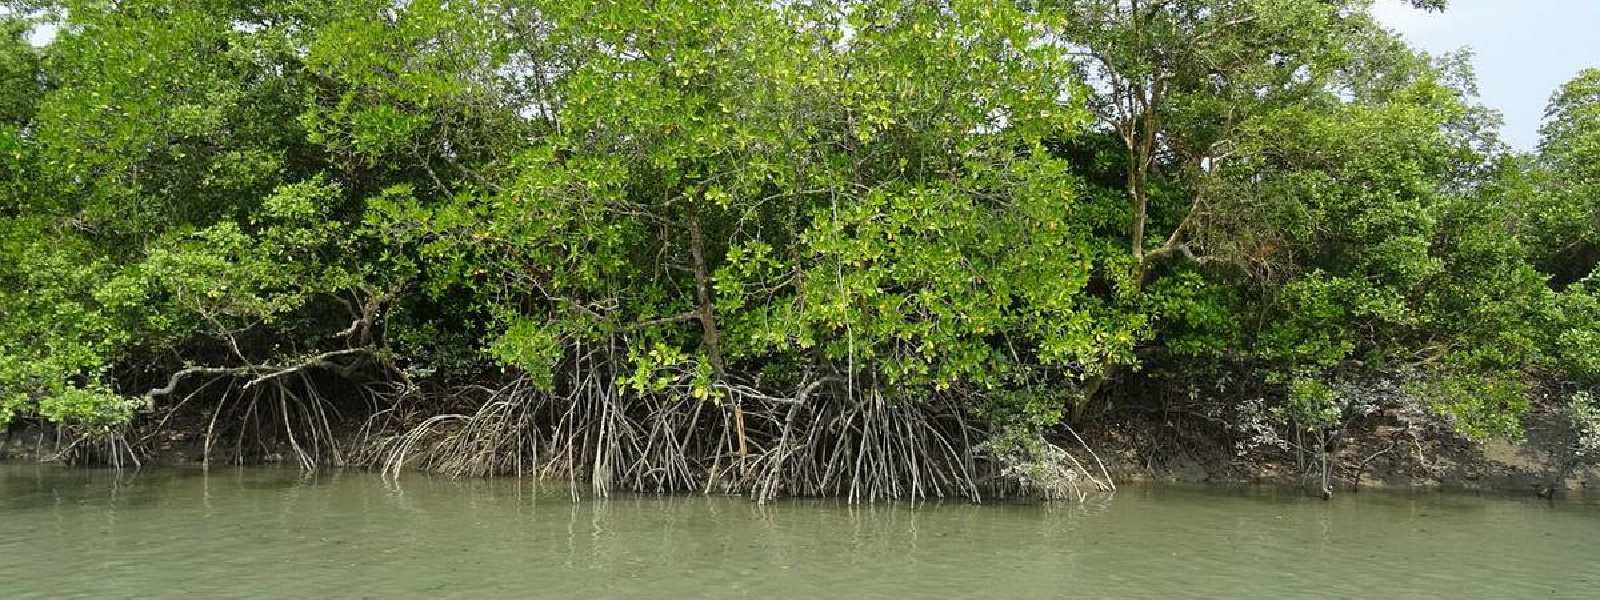 (VIDEO) Mangroves: A Lifeline for Sri Lanka